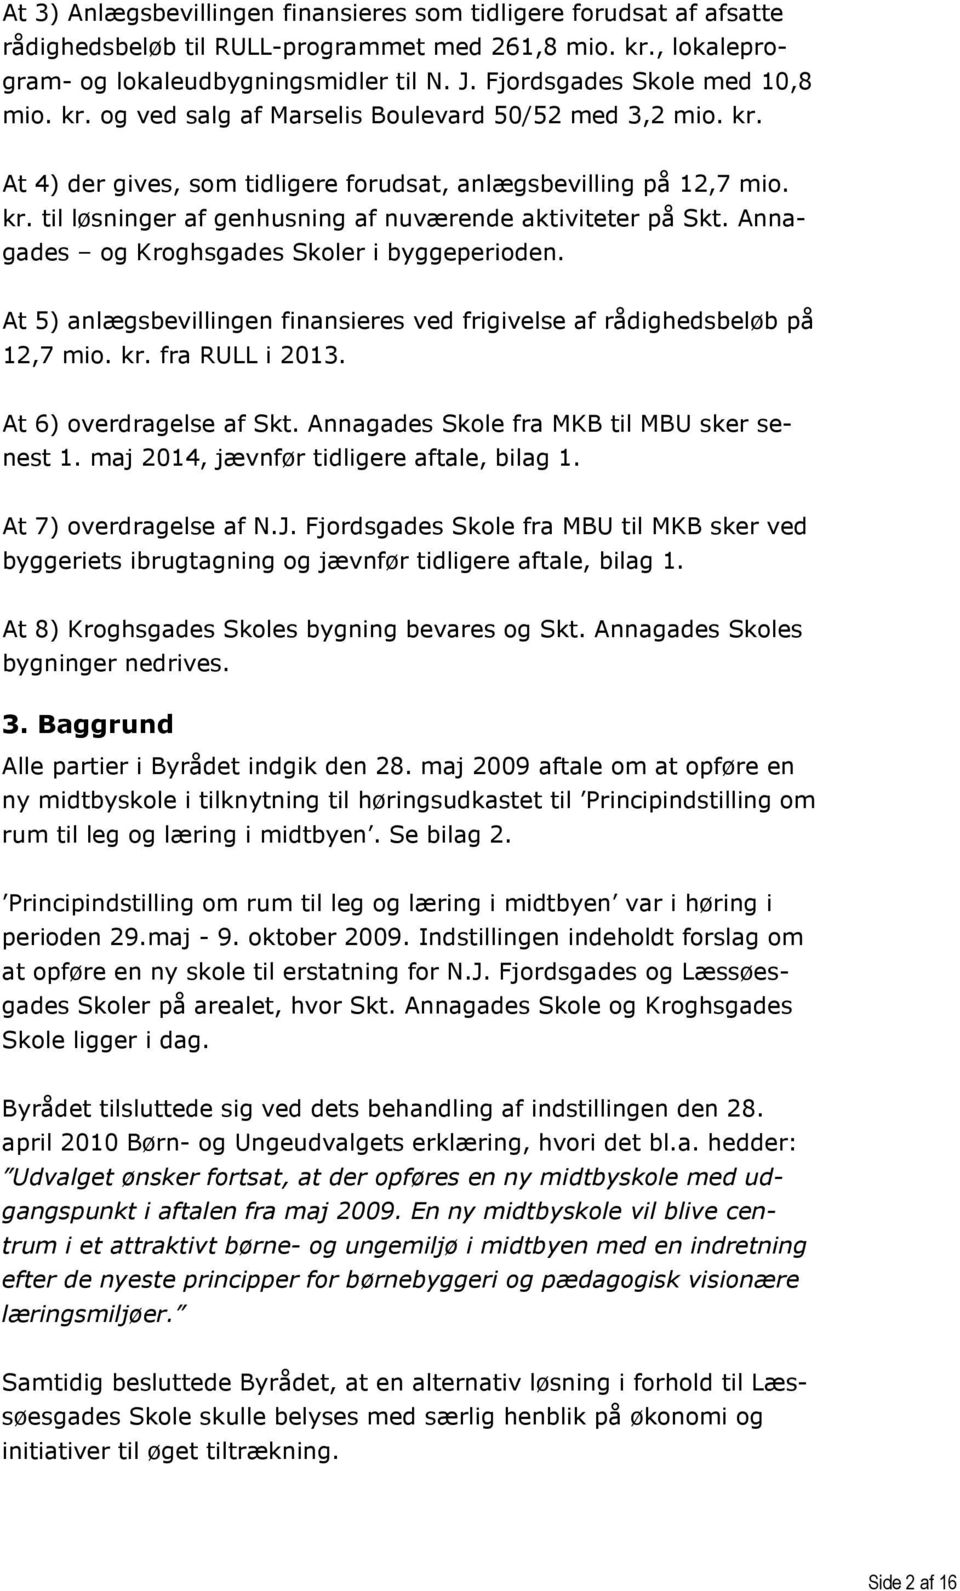 Annagades og Kroghsgades Skoler i byggeperioden. At 5) anlægsbevillingen finansieres ved frigivelse af rådighedsbeløb på 12,7 mio. kr. fra RULL i 2013. At 6) overdragelse af Skt.